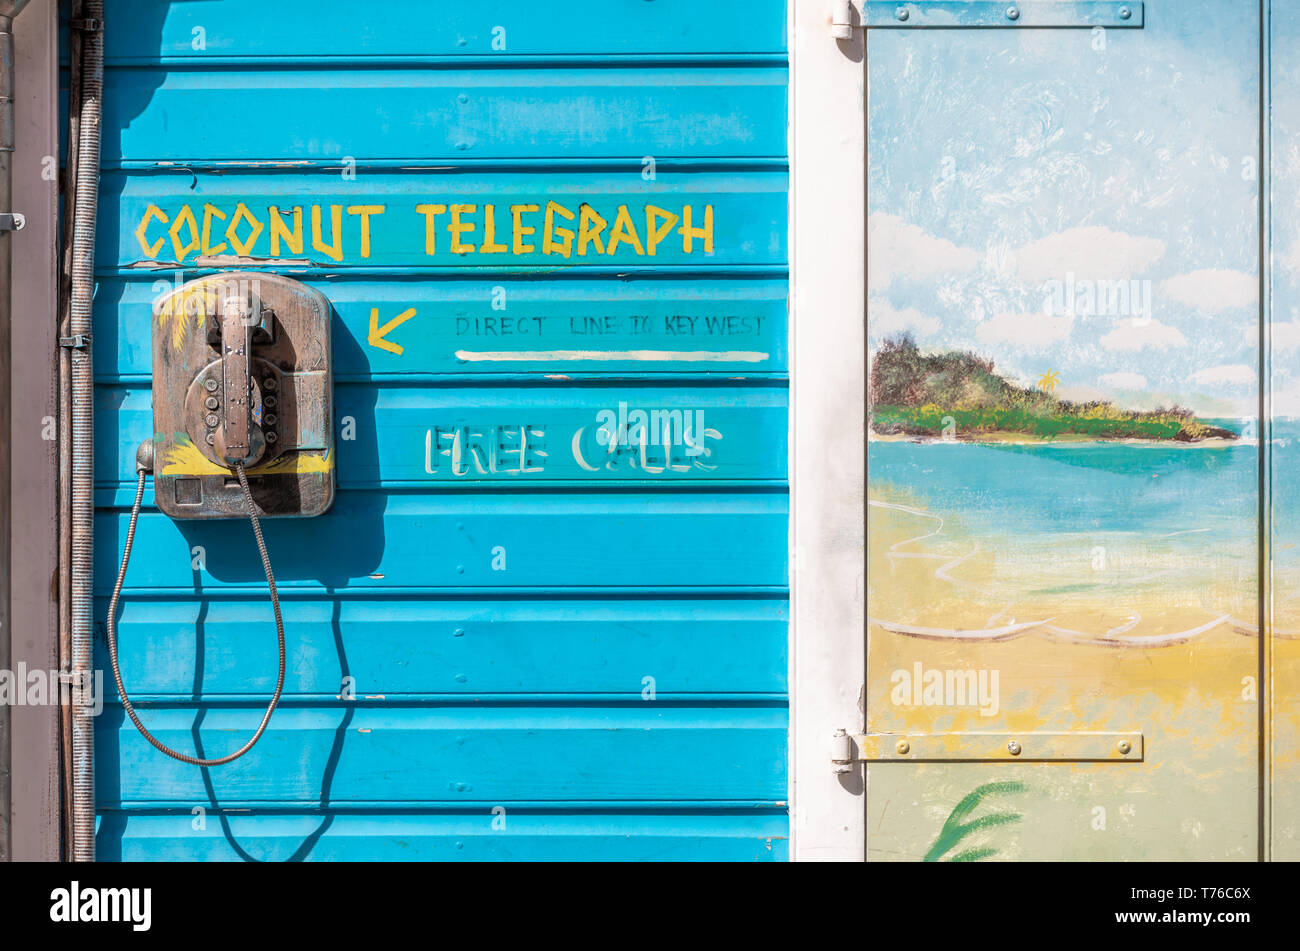 Telegraph de coco, un ancien téléphone monté sur un mur extérieur à St Barth, expliquant que c'est un moyen de communiquer directement avec Key West Banque D'Images